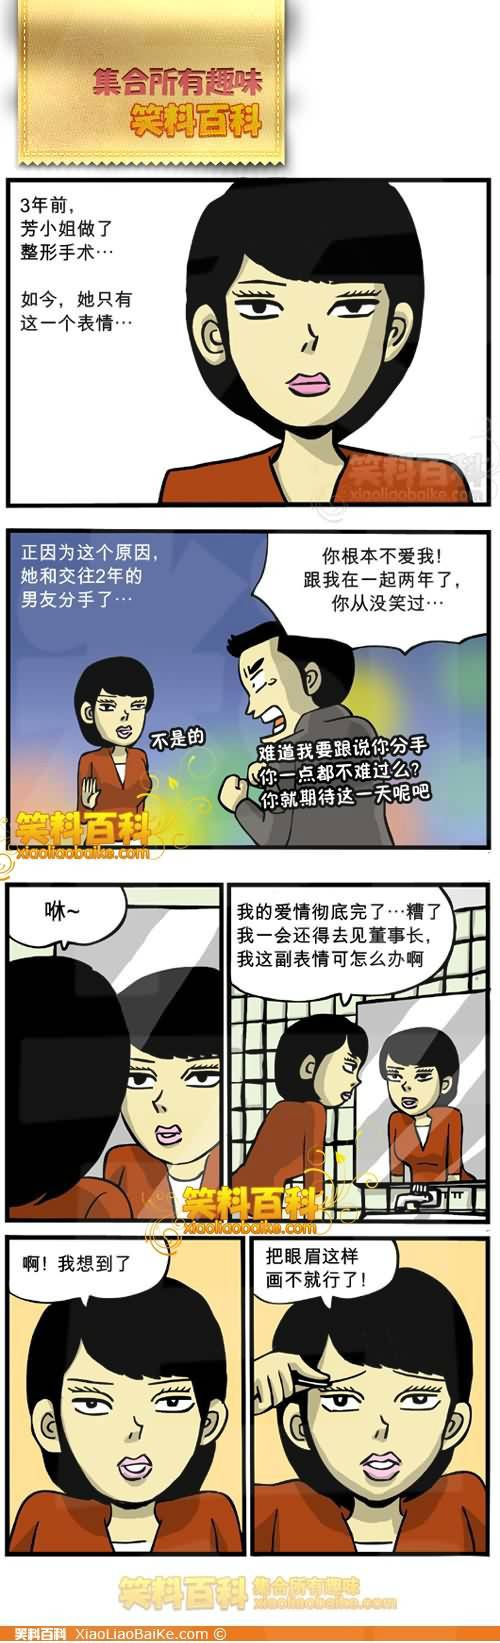 邪恶漫画爆笑囧图第259刊：师傅打扮后的秘密